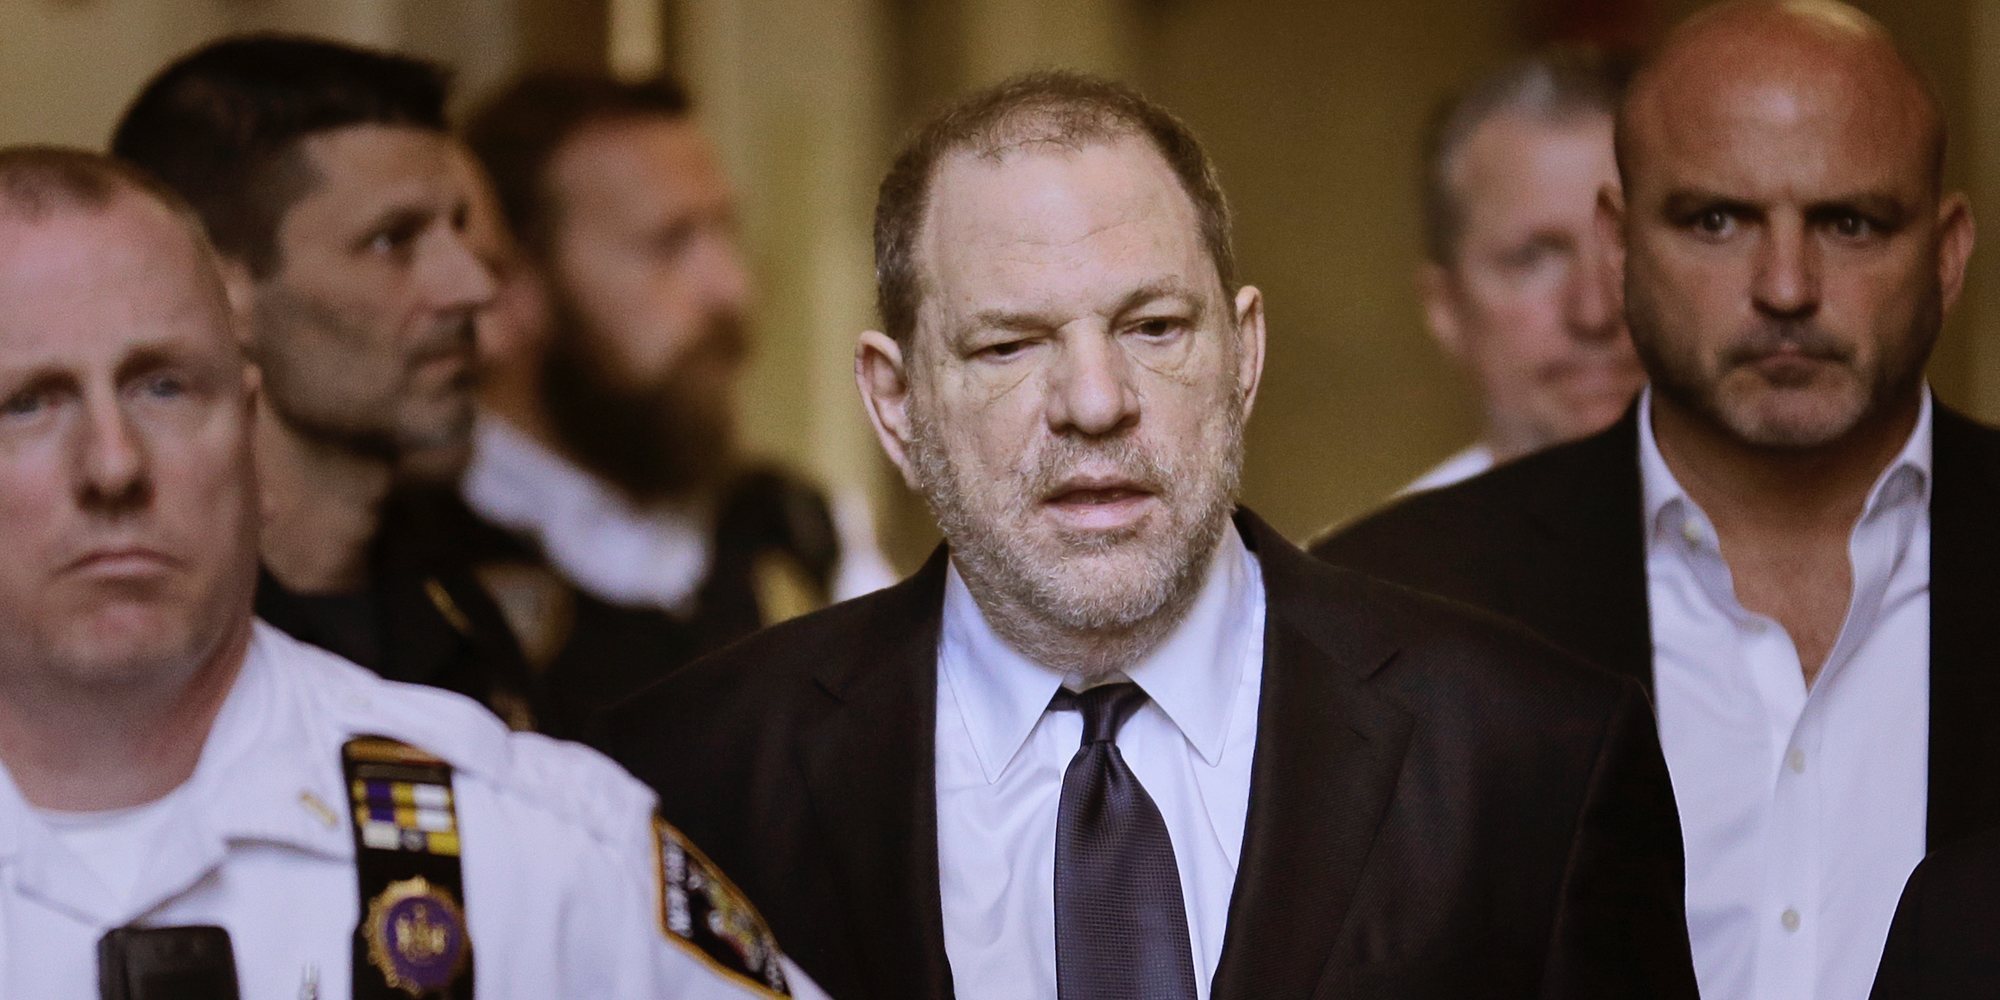 Una presunta víctima testifica contra Weinstein: "Me dijo: 'No te preocupes, no puedo tener hijos' y me violó"